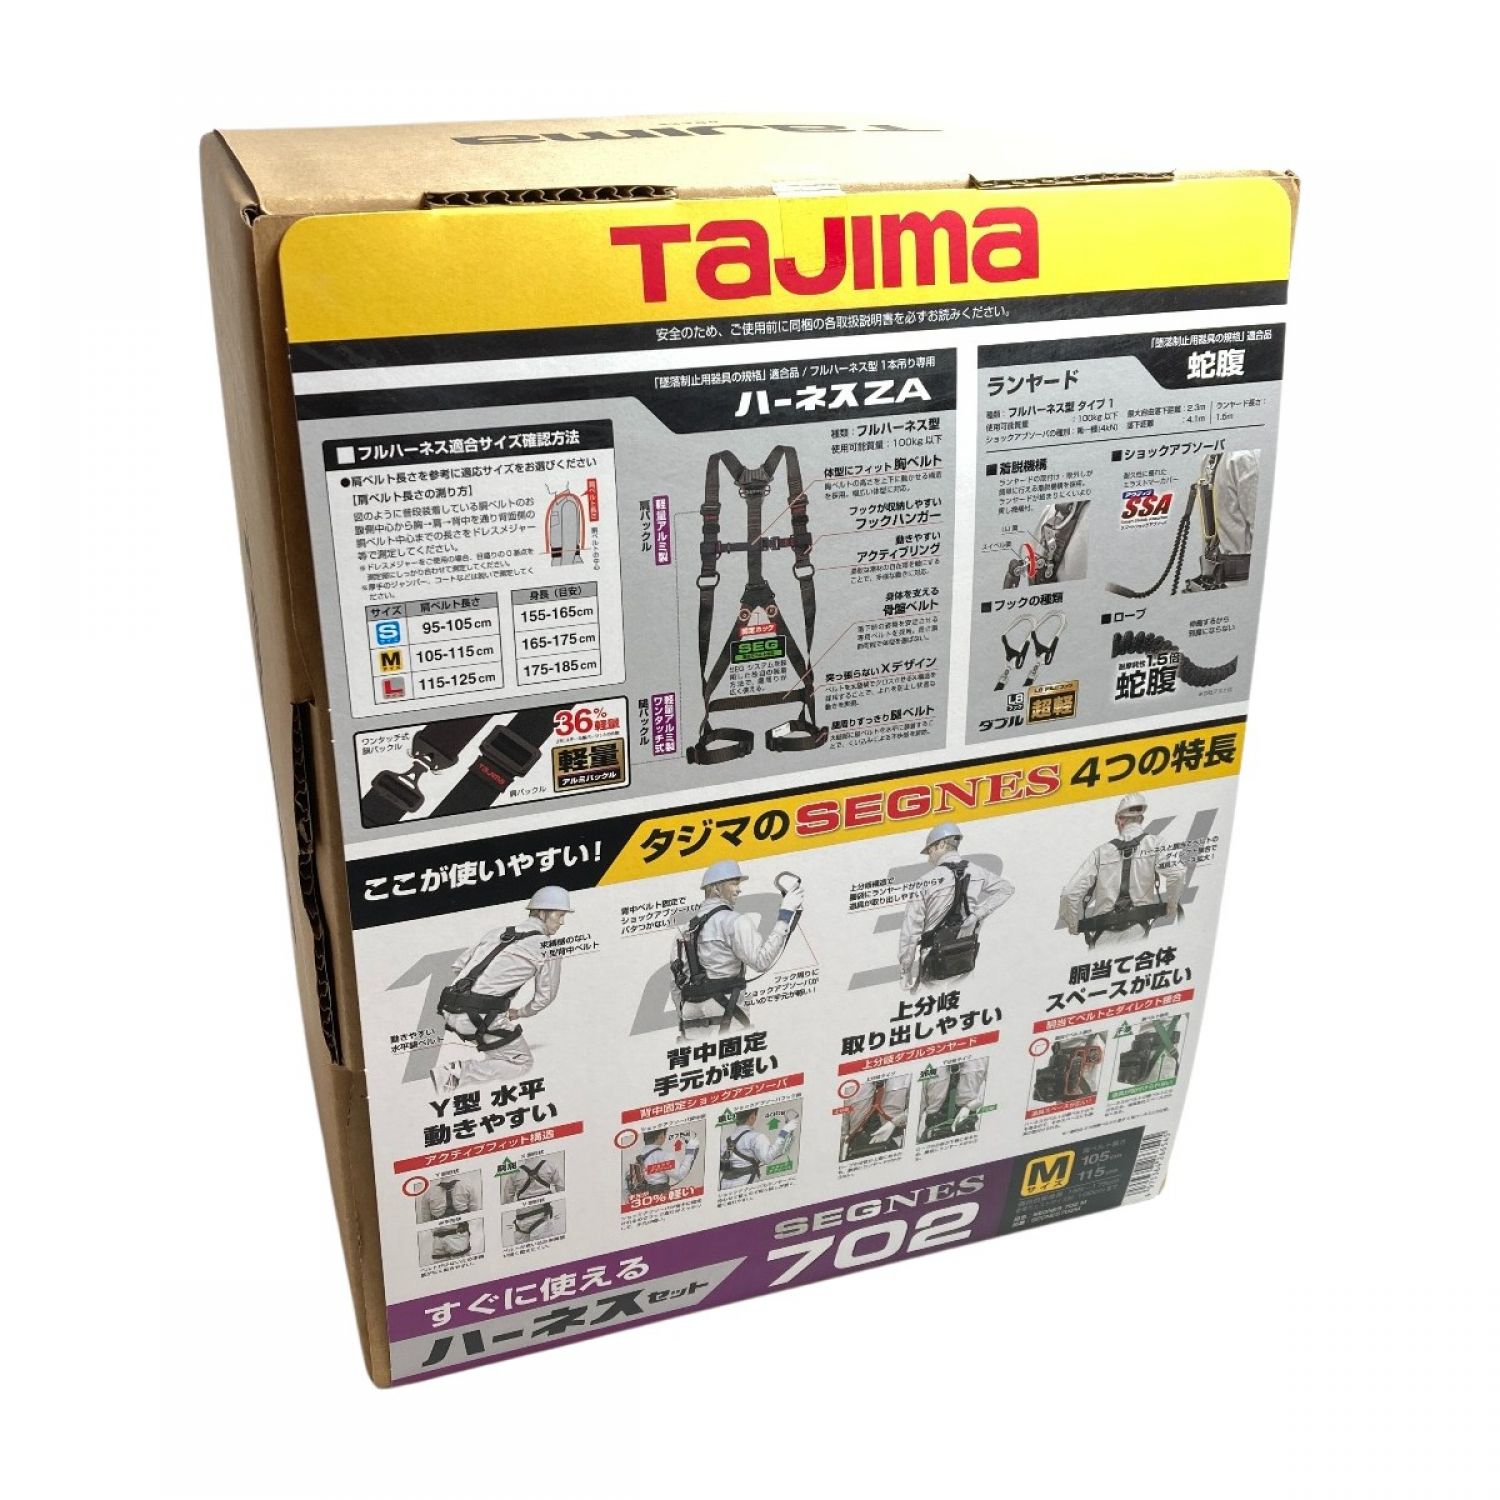 タジマ(Tajima) フルハーネス セット品 セグネス 701 Lサイズ 墜落制止用器具 - 1